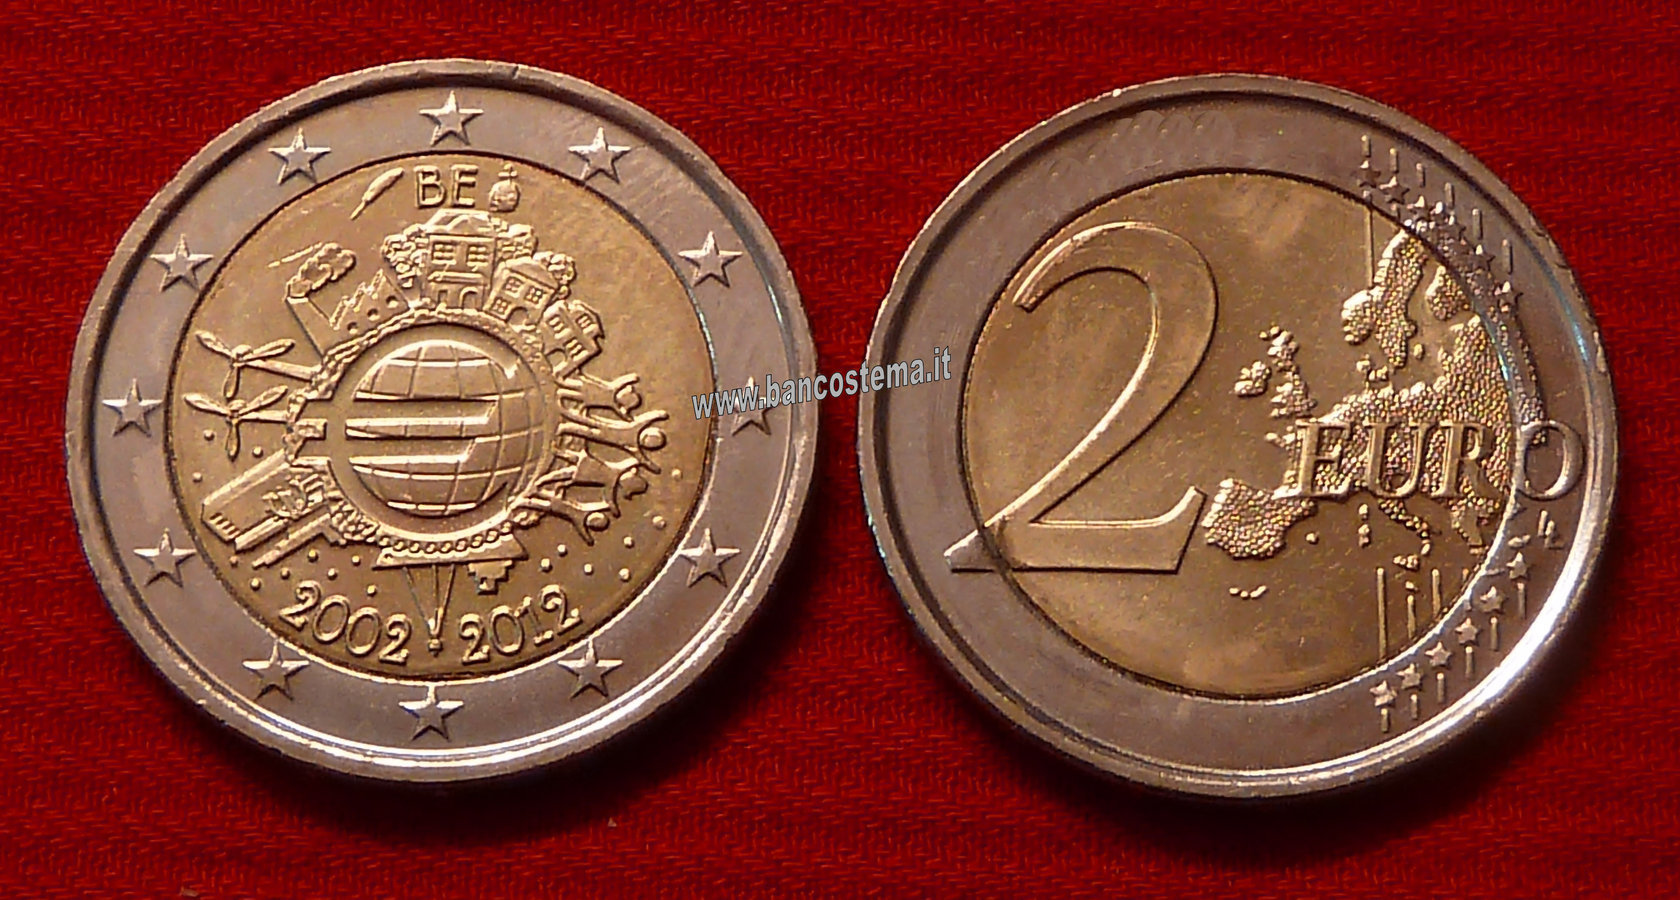 Belgio 2 euro 2012 commemorativo 10° anniversario dell'euro fdc